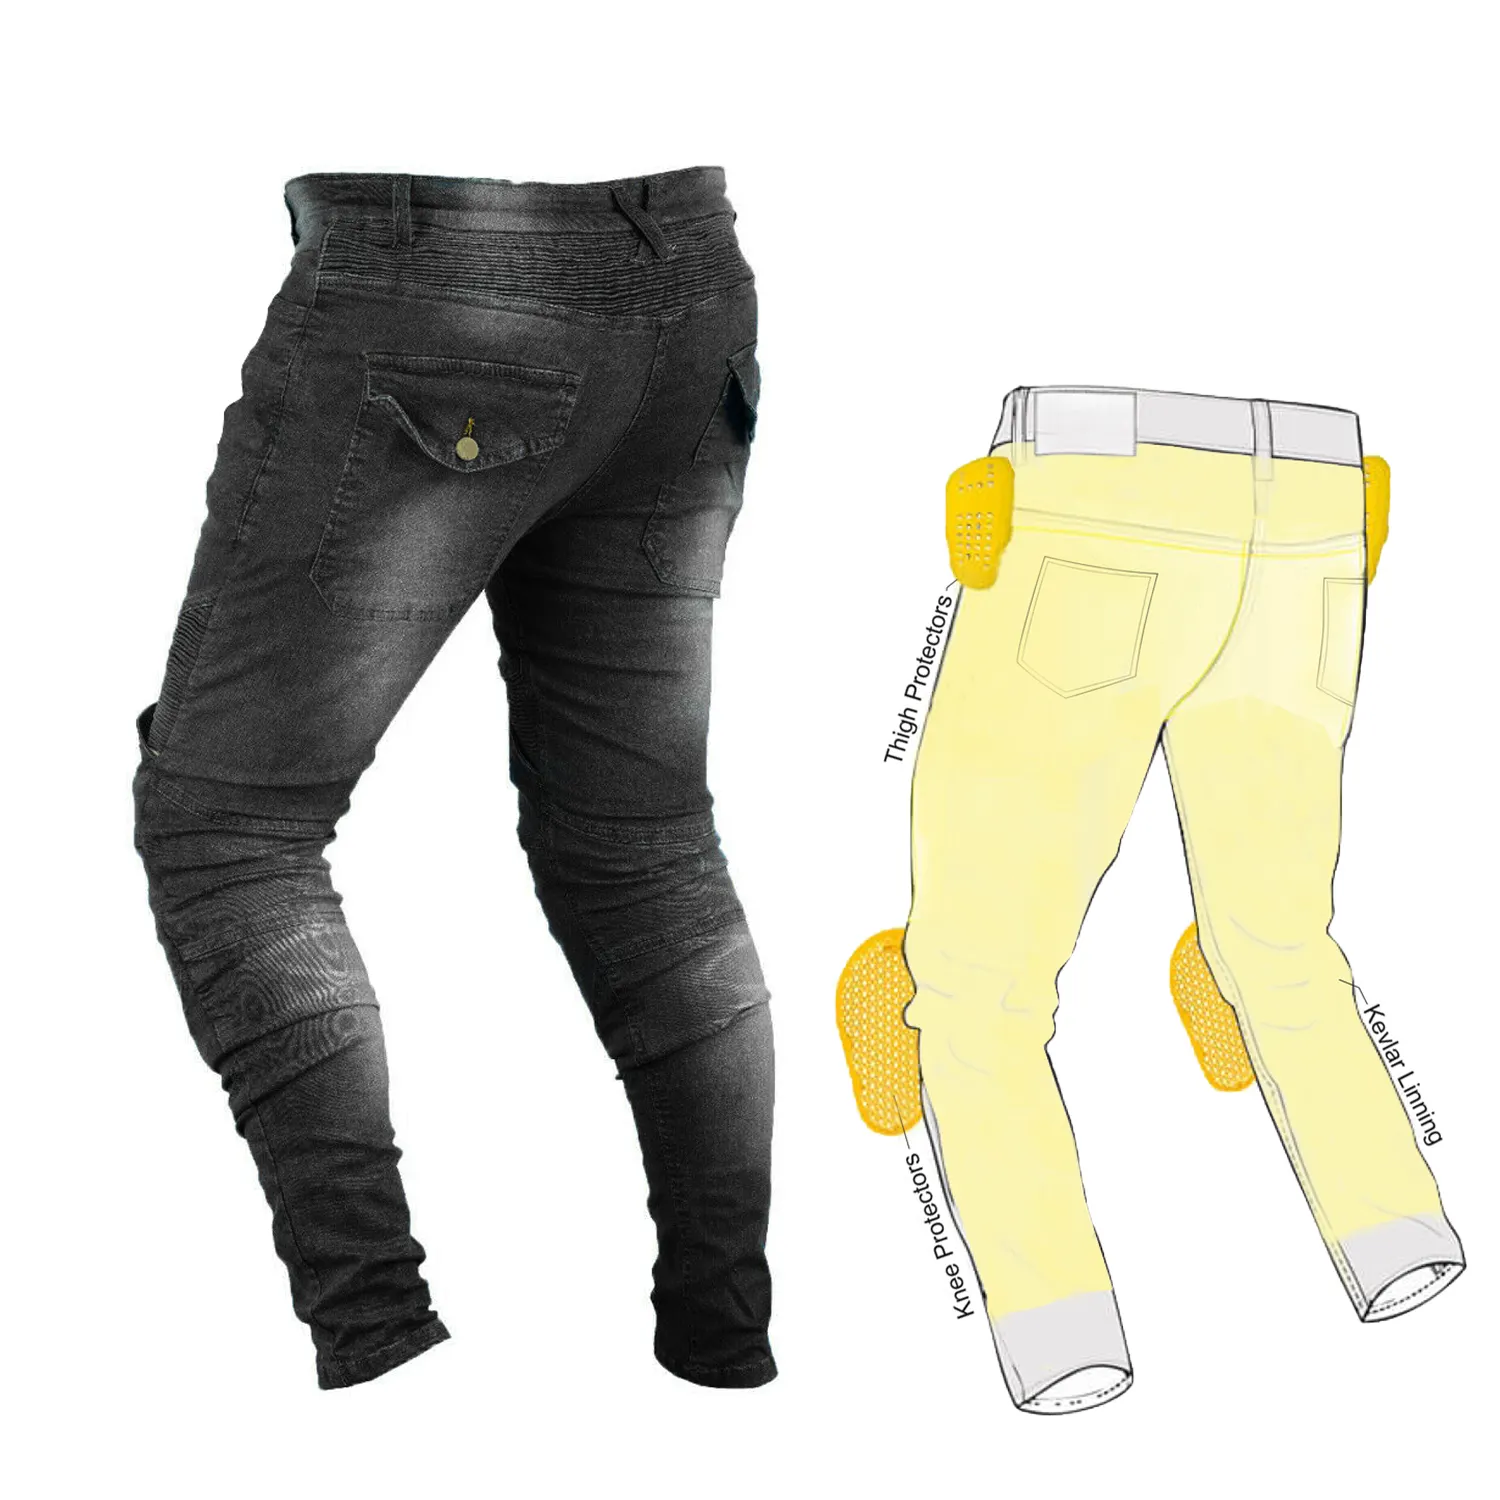 Новое поступление, эластичные джинсы kevlar для женщин, АА номинальные джинсы kevlar, первоклассная защита